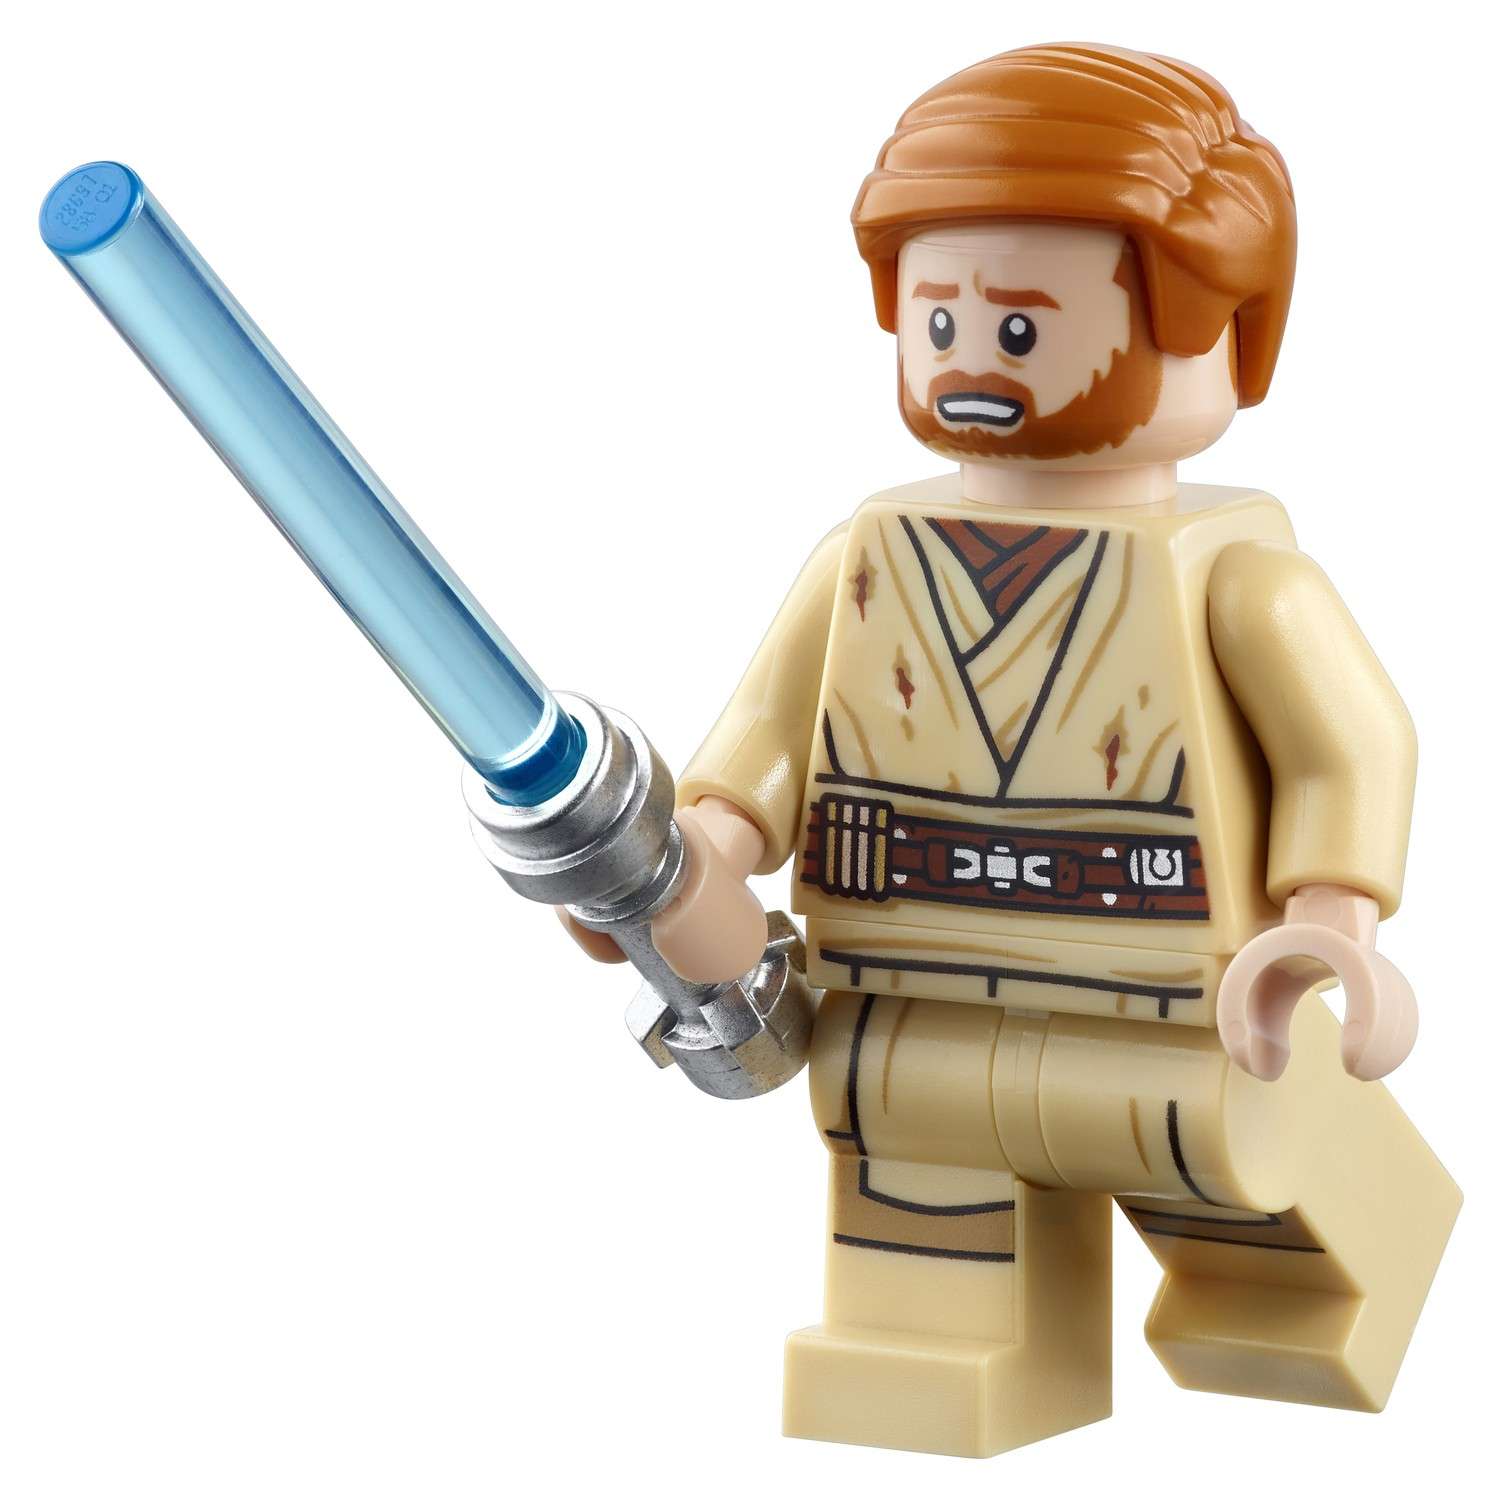 Конструктор LEGO Star Wars 75112 Генерал Гривус